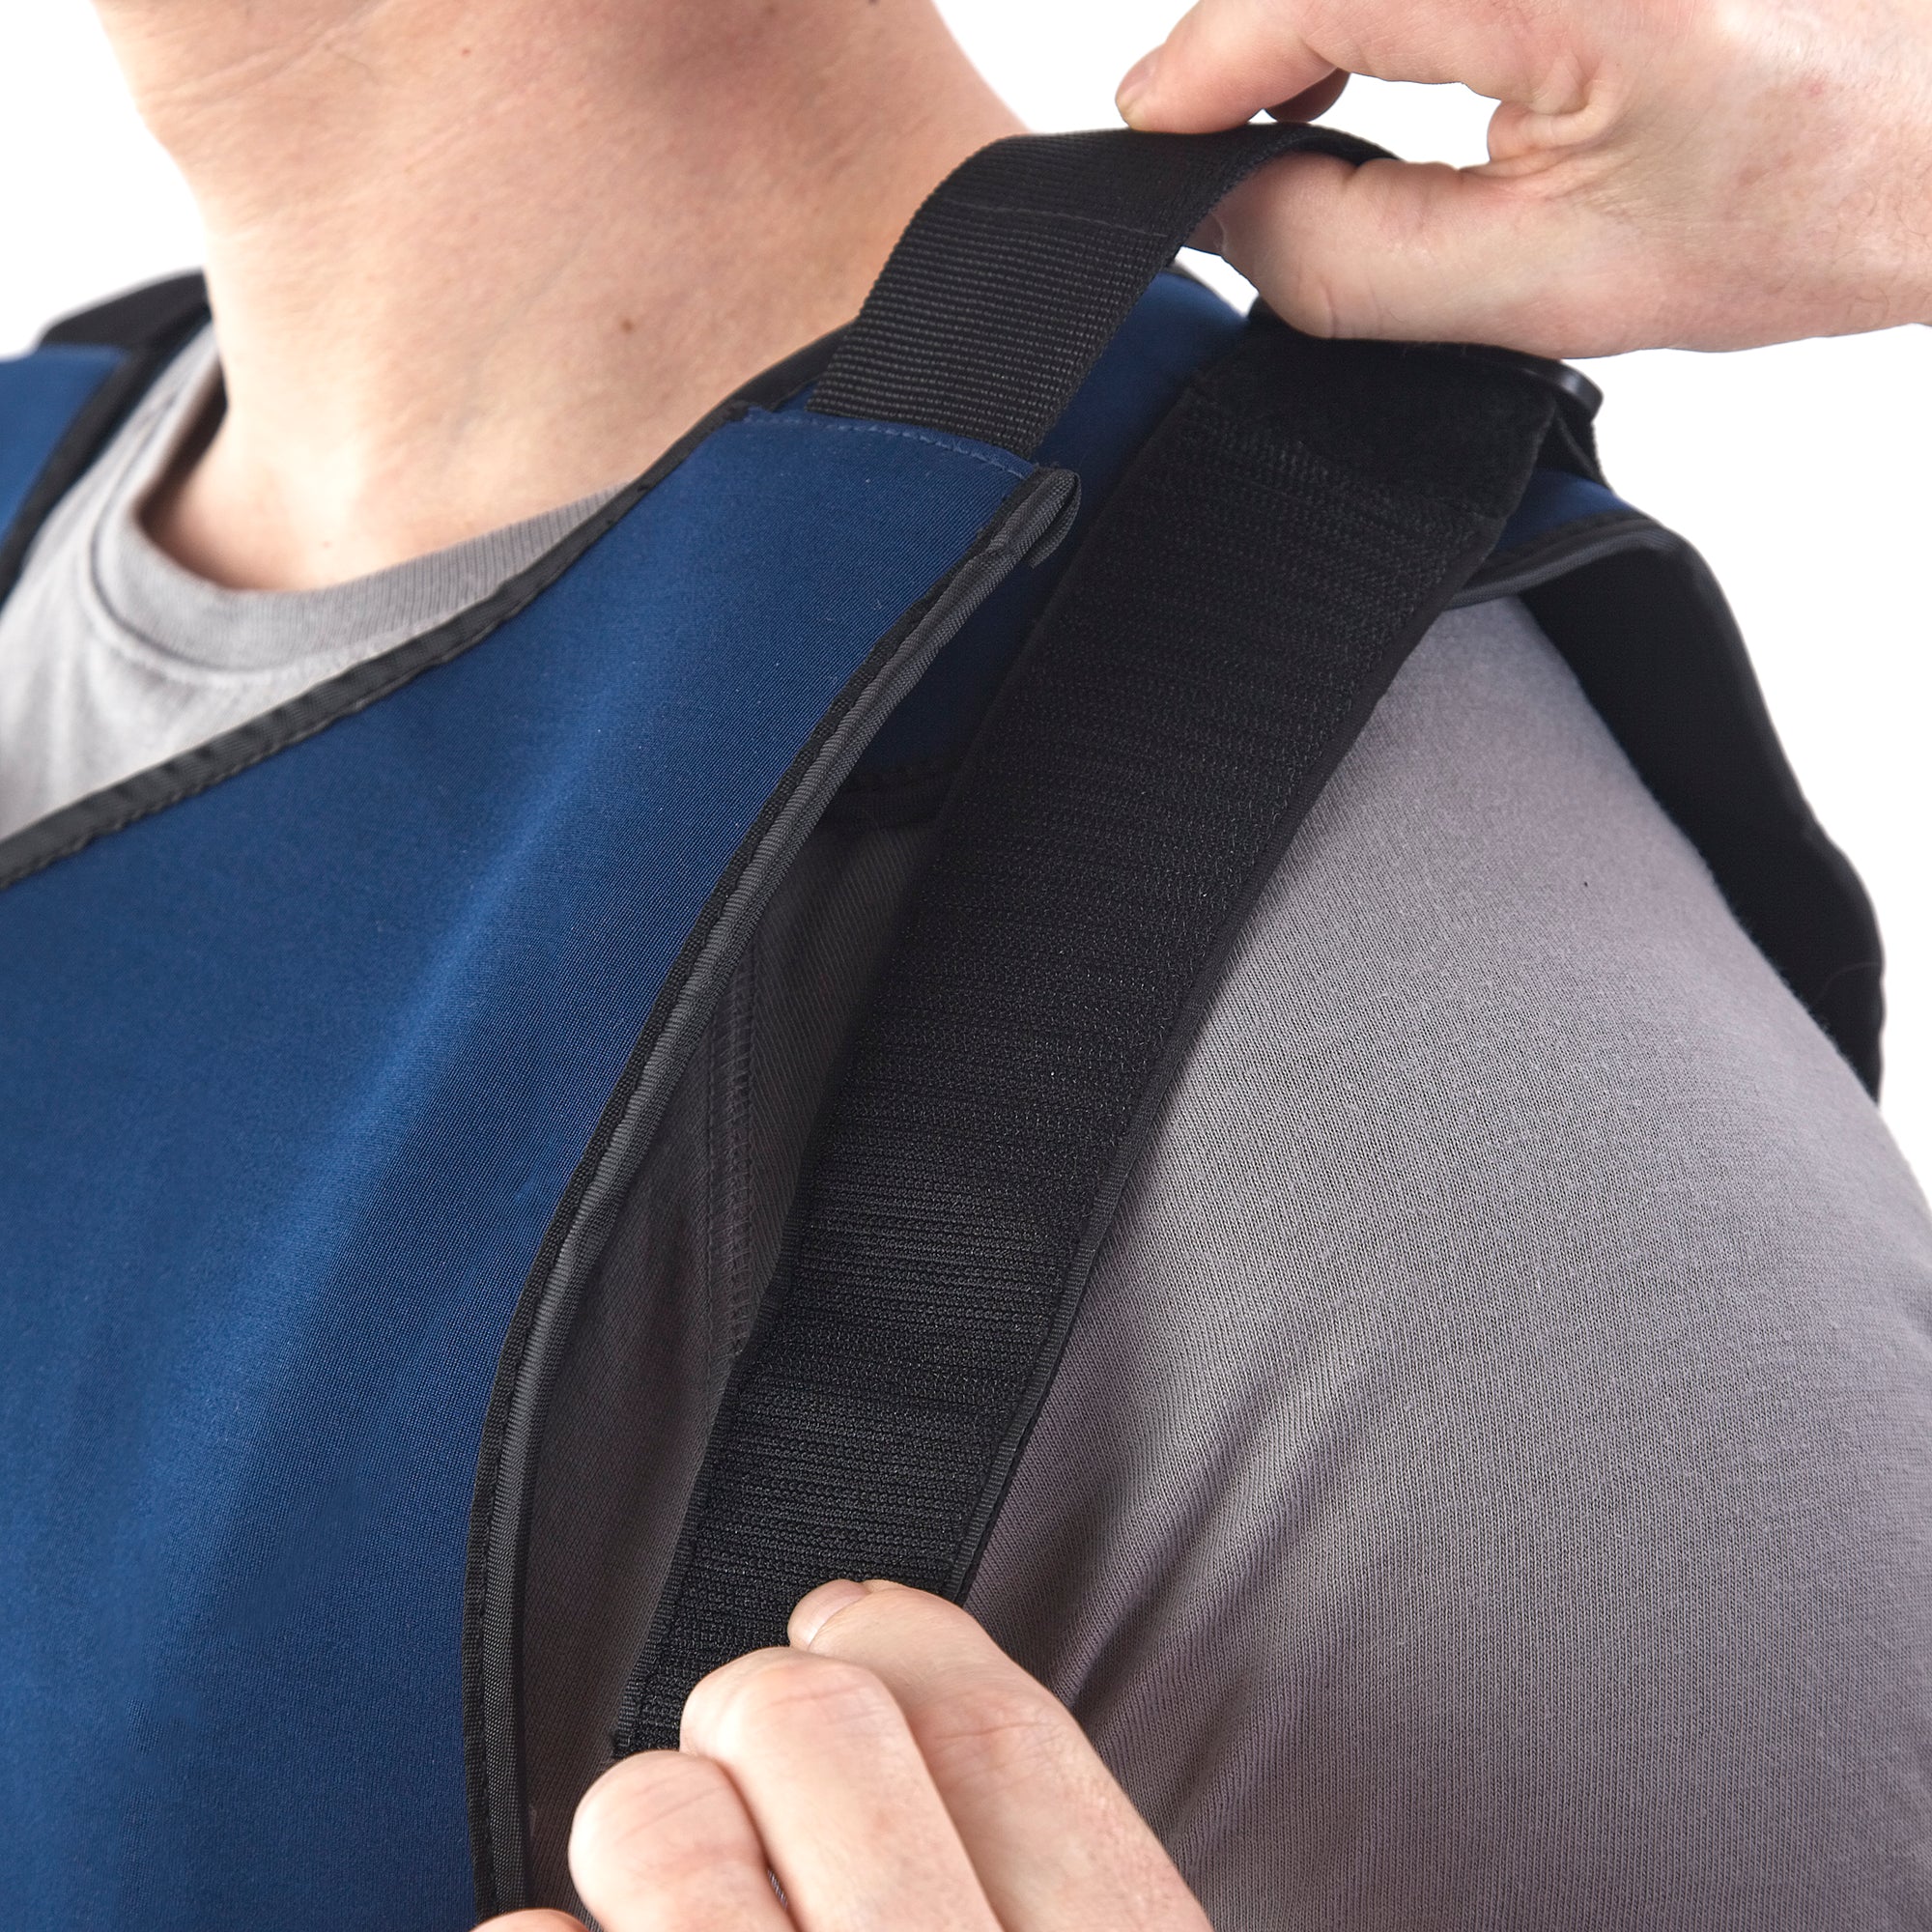 Man wearing FlexiFreeze personal ice vest, adjusting shoulder strap, blue